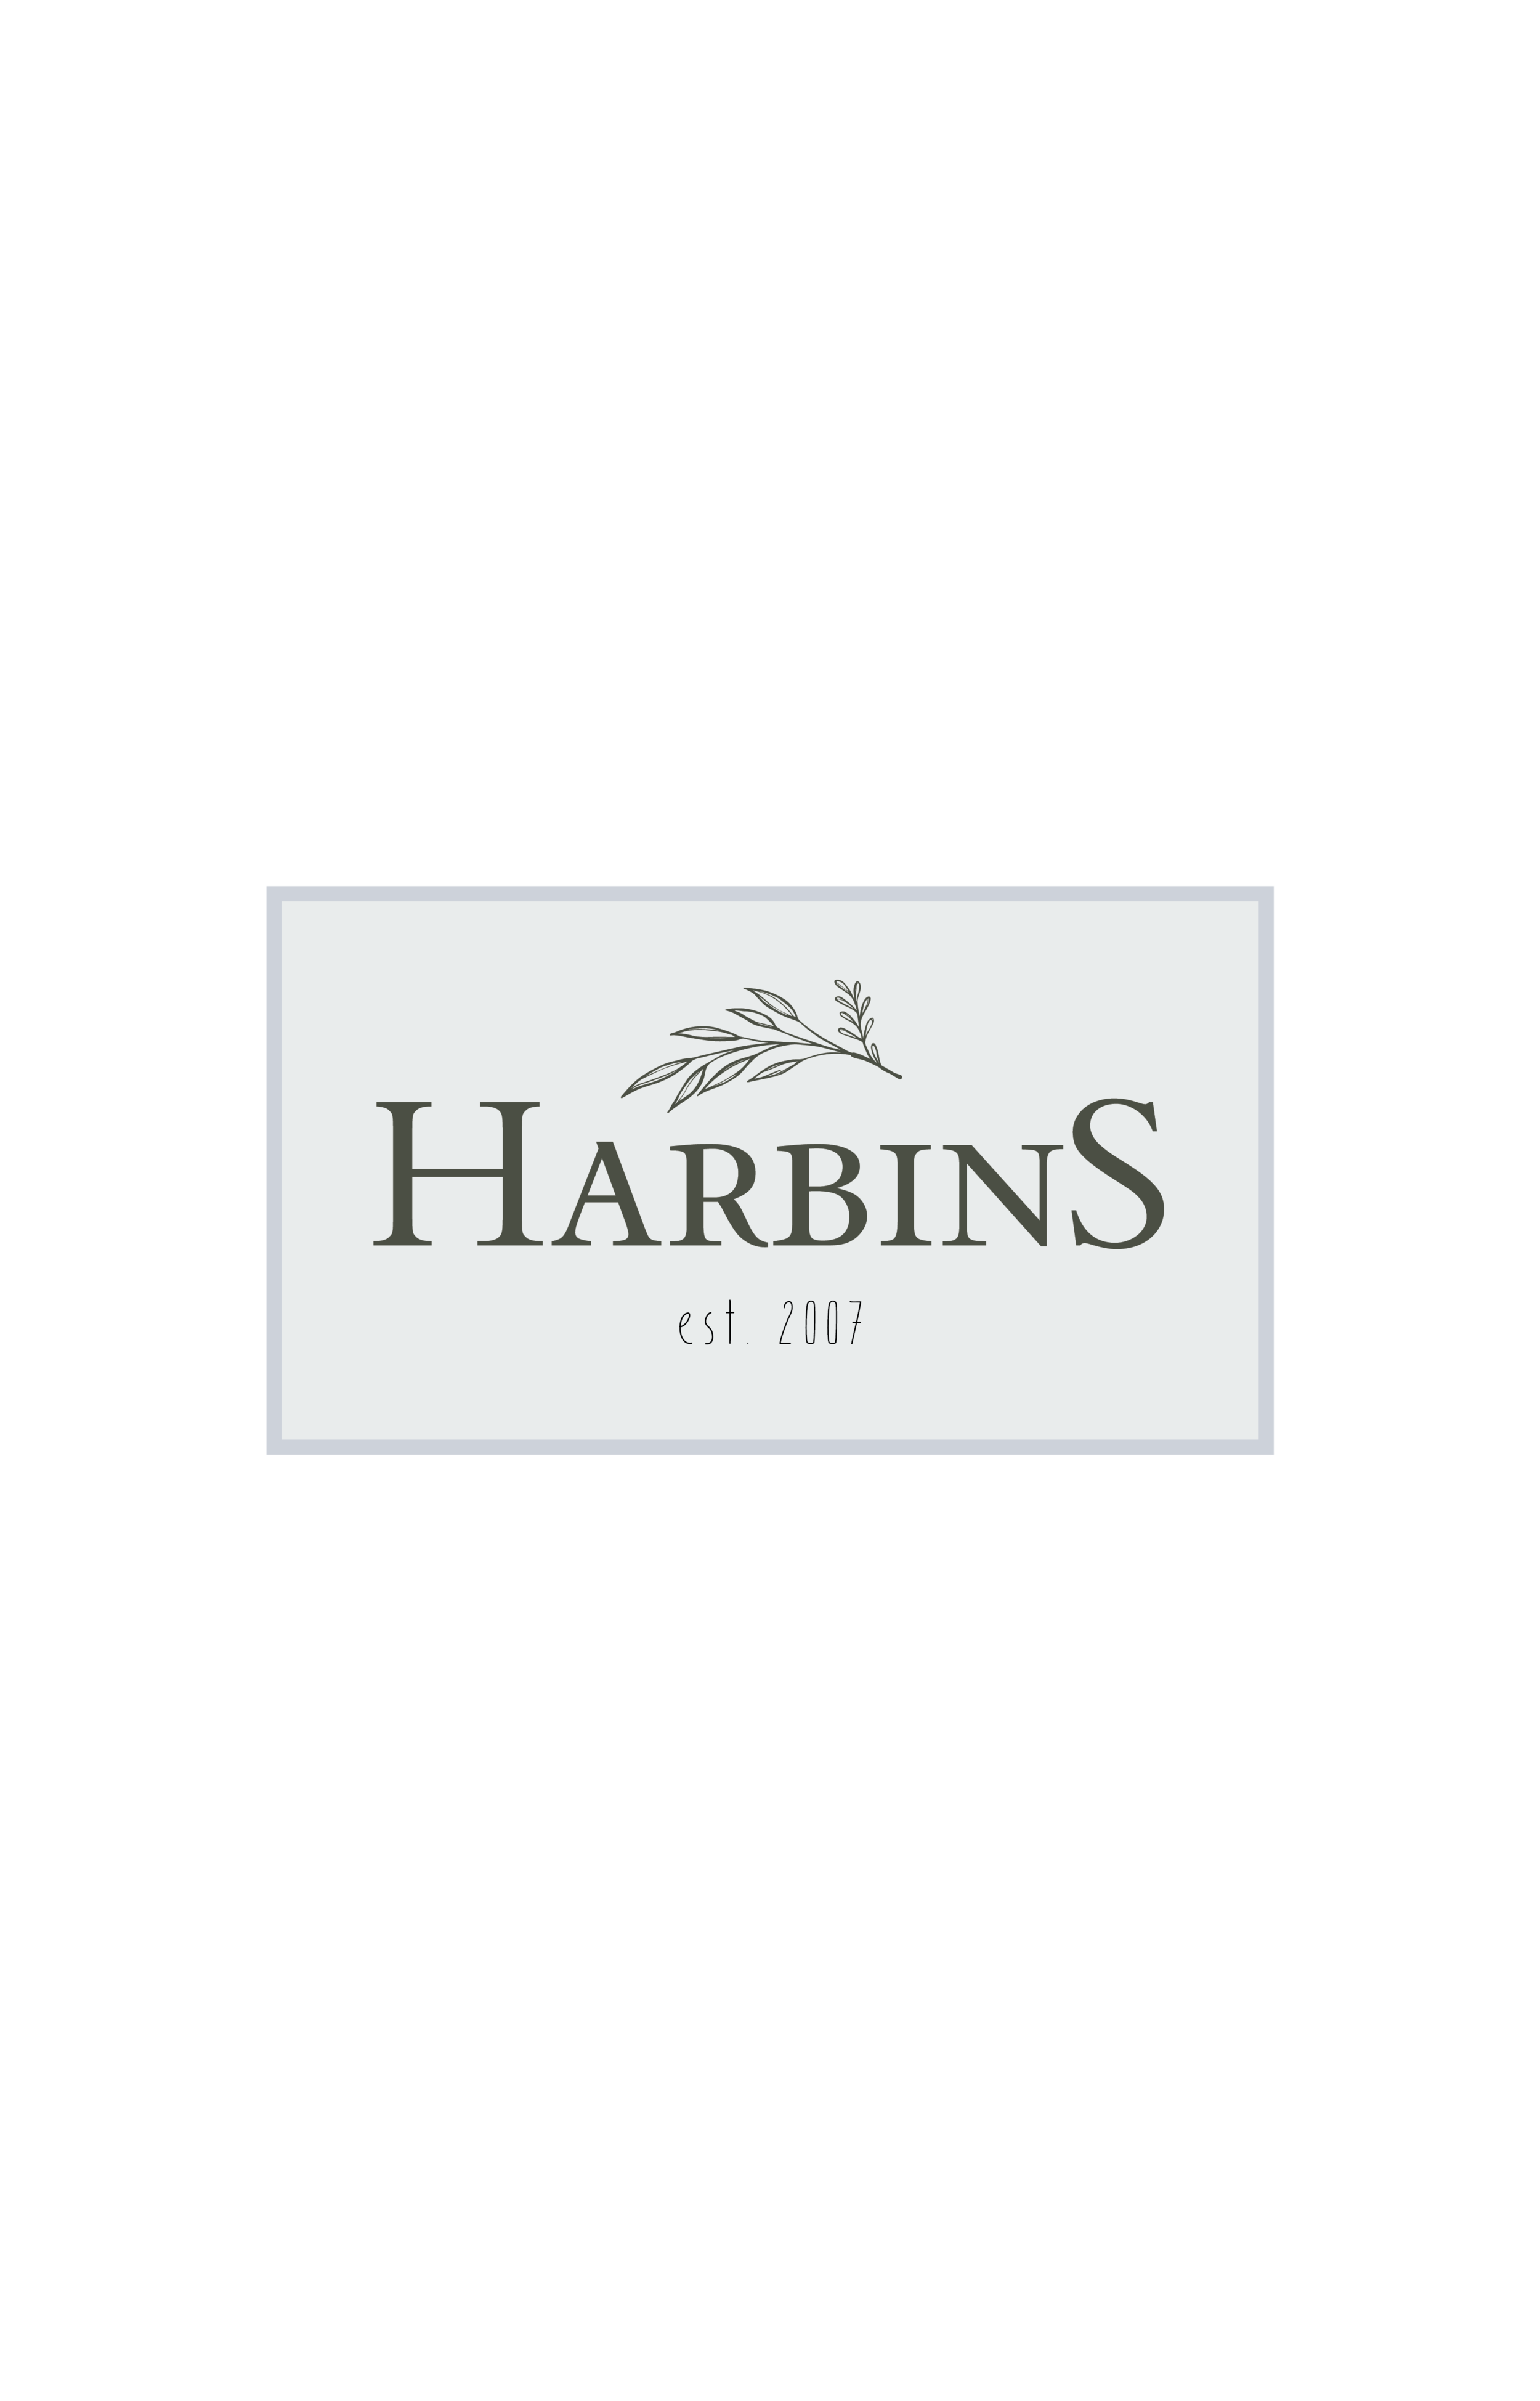 Harbins_BrandingKit_Logos-05.png